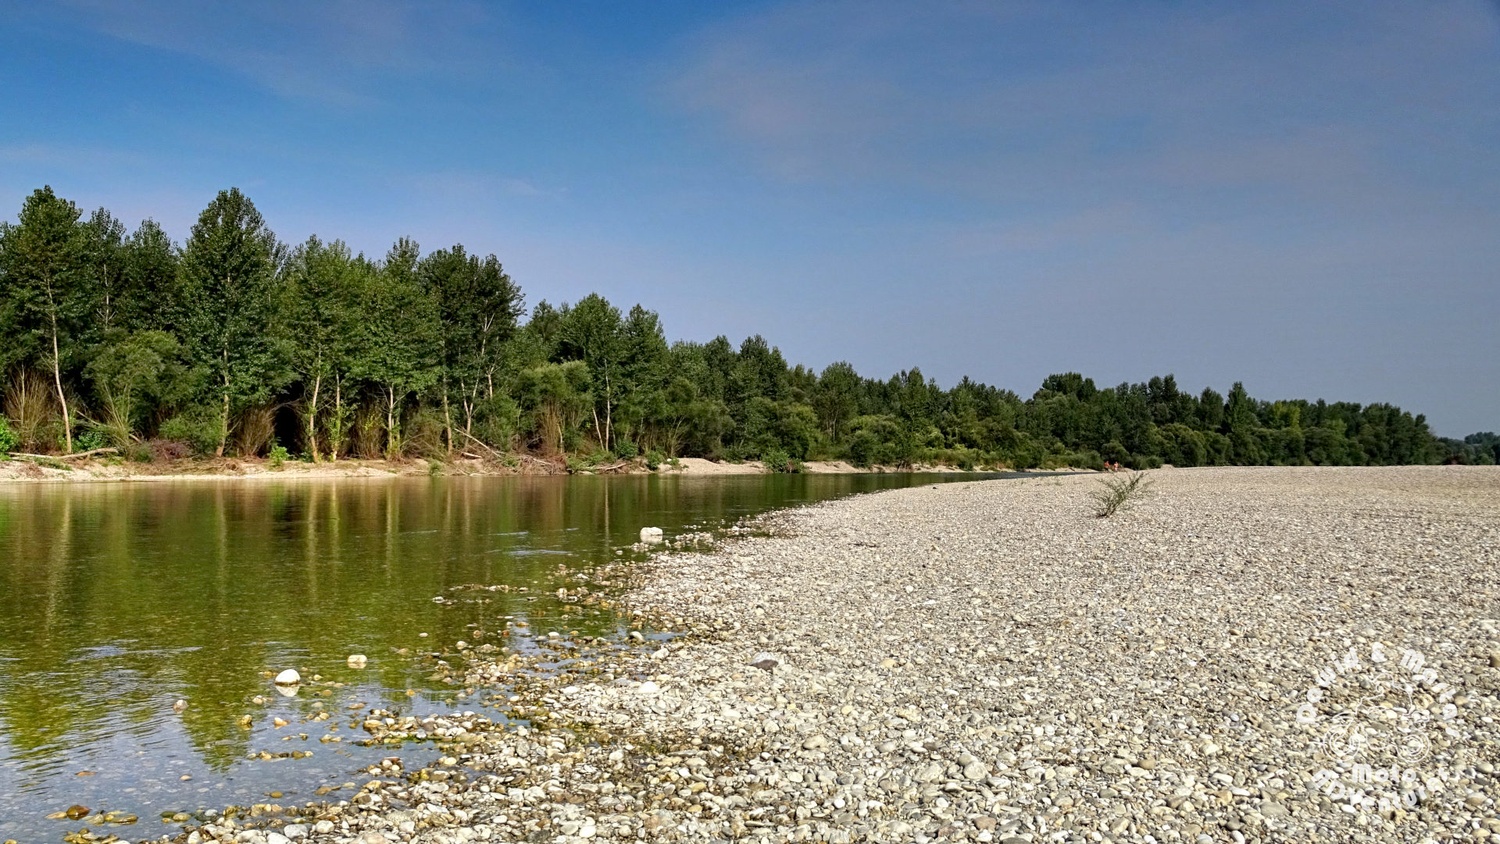 The Drava River bank in Croatia Gornij Hrascan